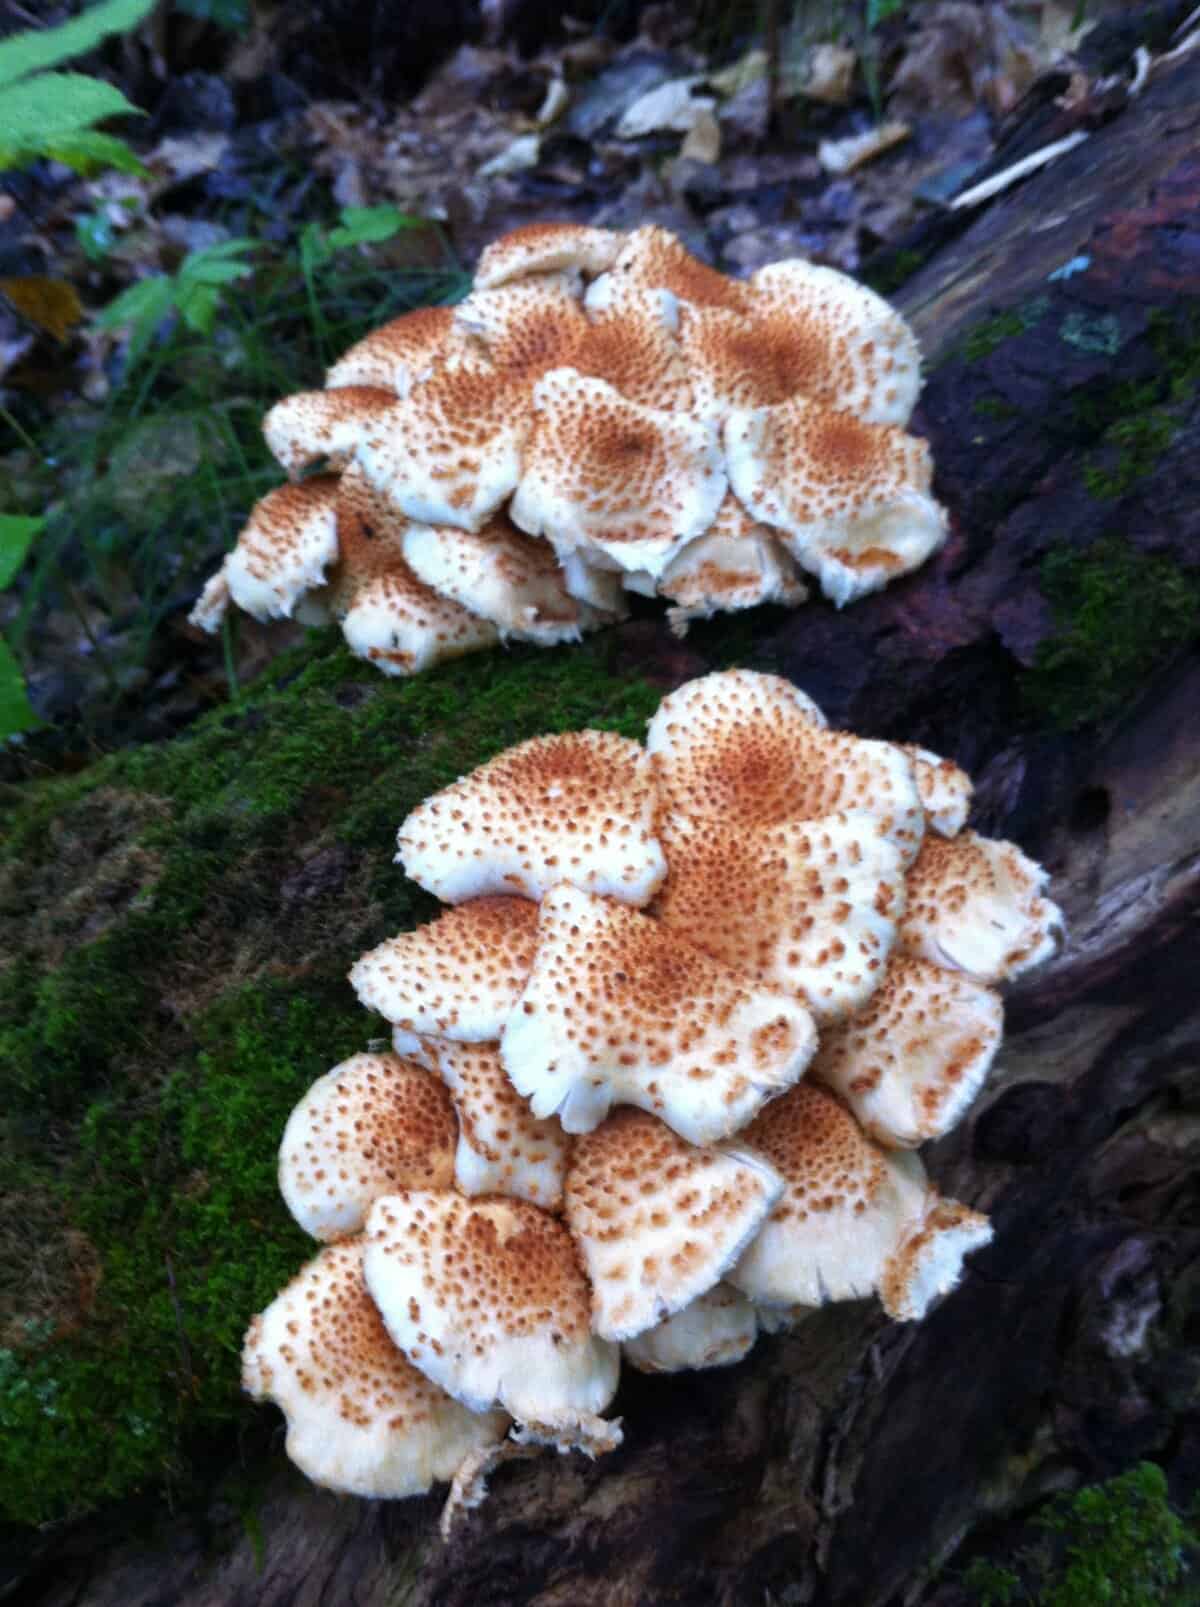 Pholiota mushrooms